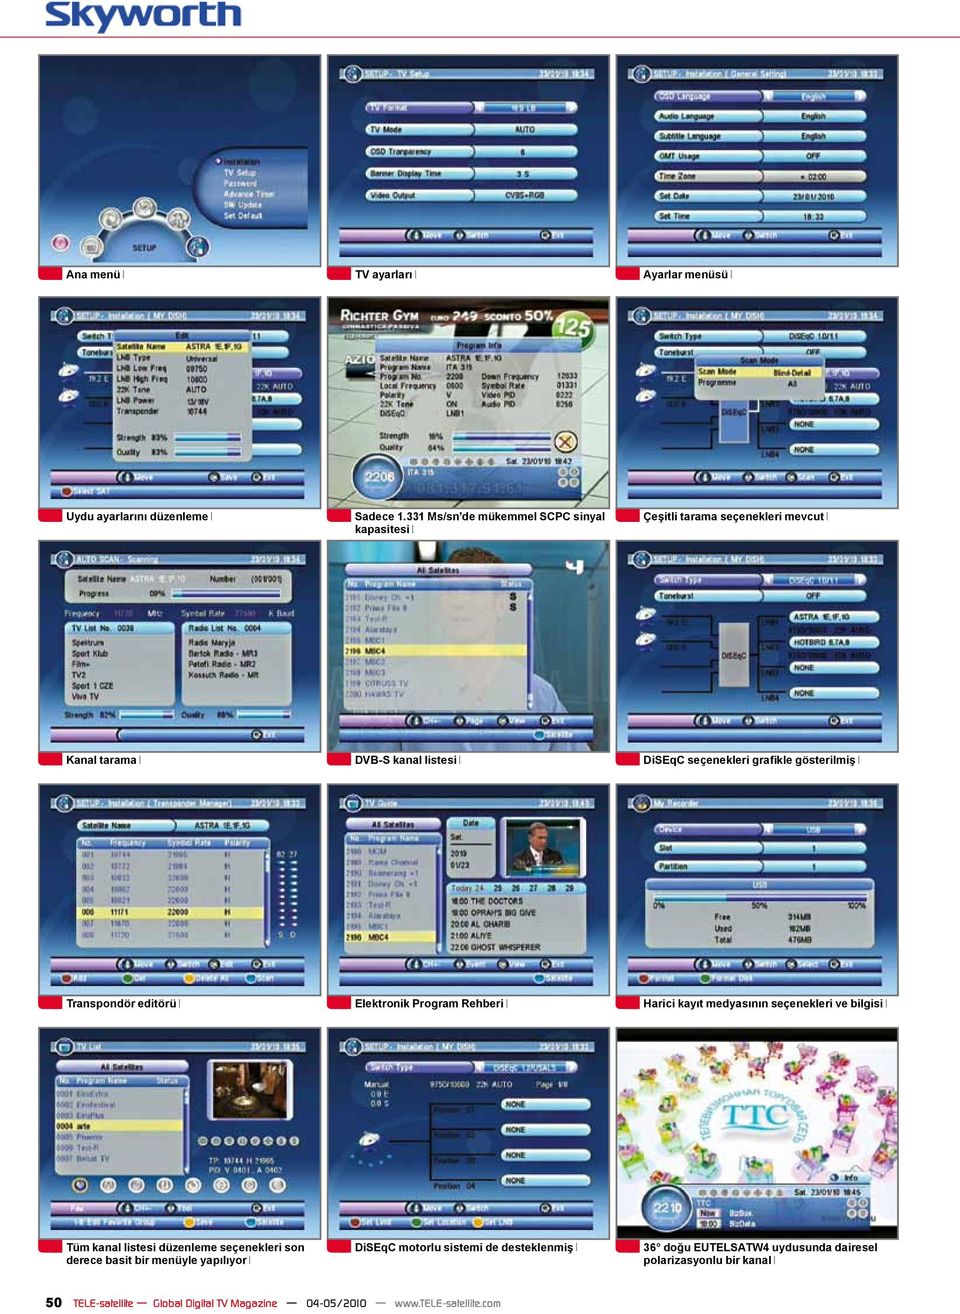 gösterilmiş Transpondör editörü Elektronik Program Rehberi Harici kayıt medyasının seçenekleri ve bilgisi Tüm kanal listesi düzenleme